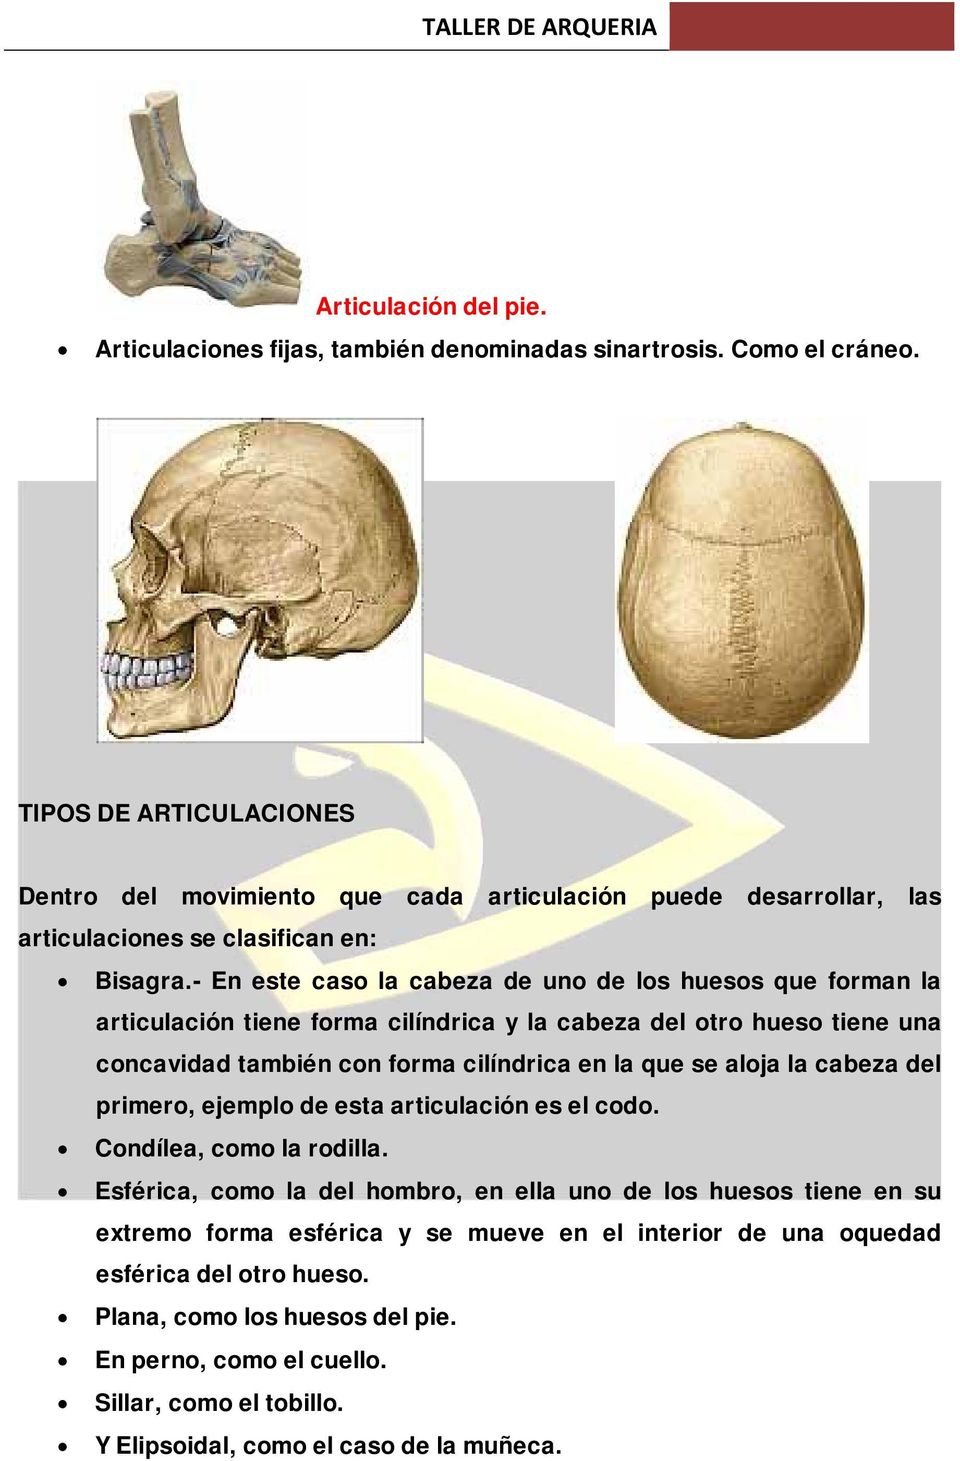 - En este caso la cabeza de uno de los huesos que forman la articulación tiene forma cilíndrica y la cabeza del otro hueso tiene una concavidad también con forma cilíndrica en la que se aloja la